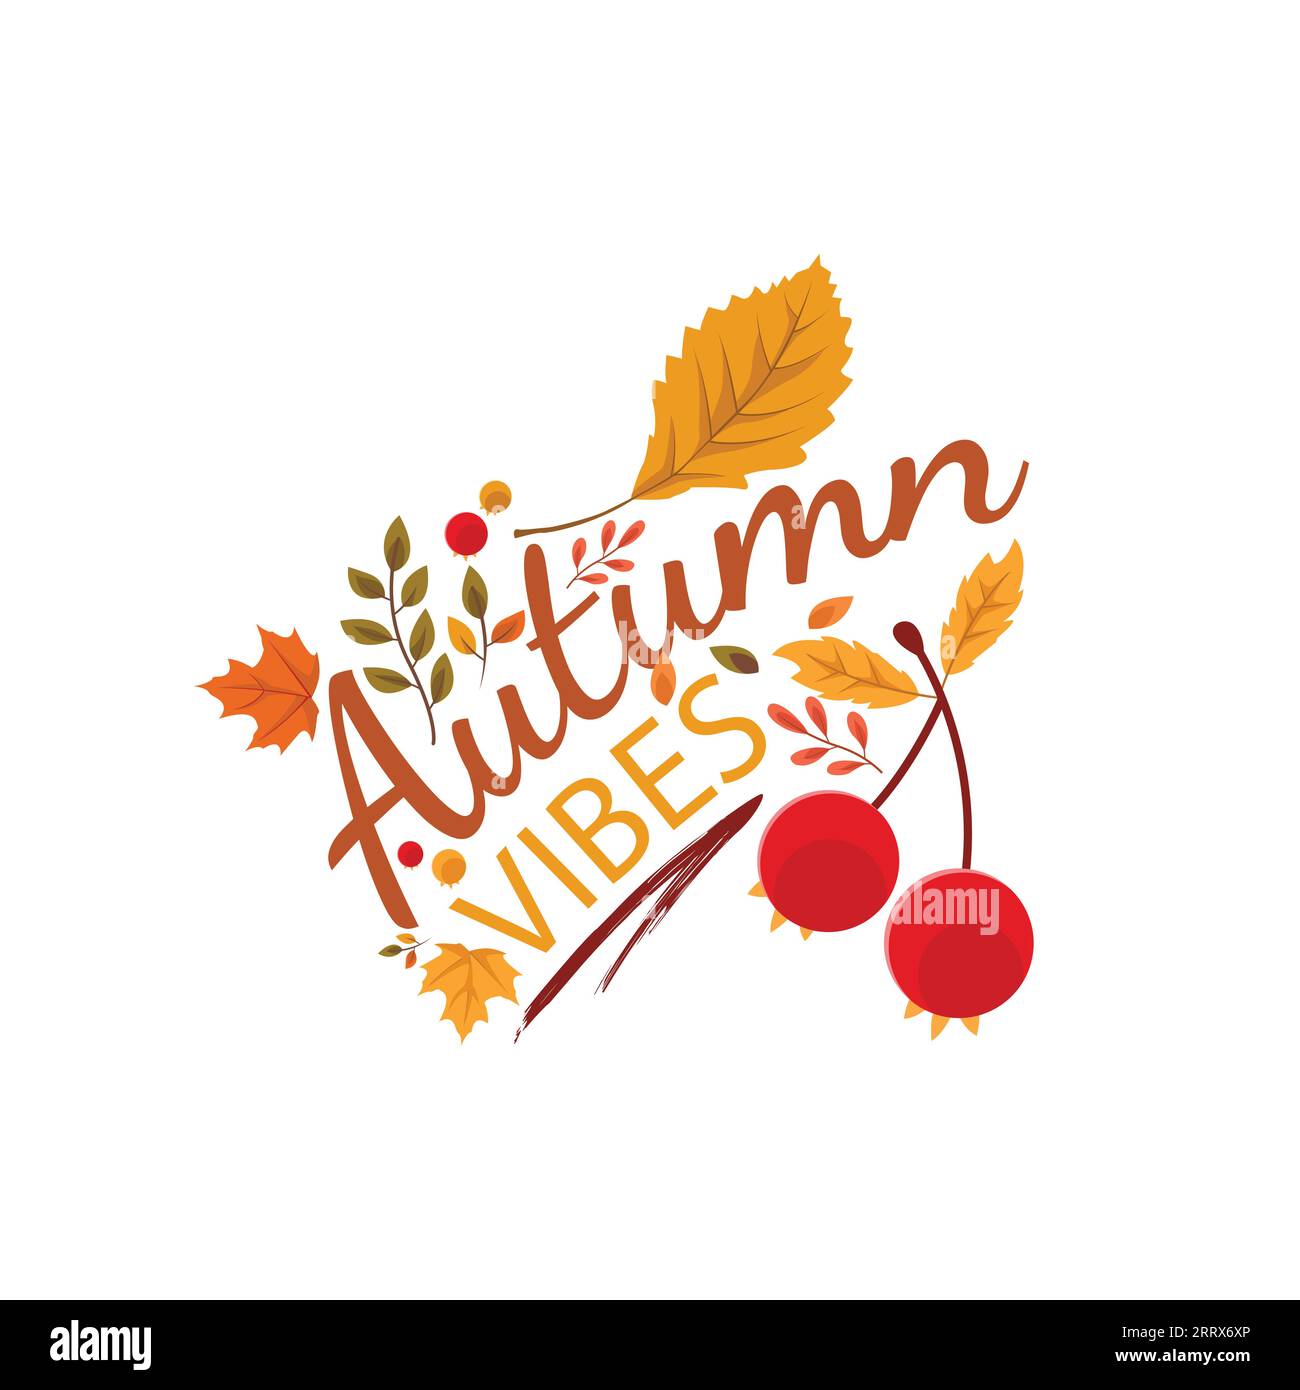 Autumn Vibes conception vectorielle de typographie saisonnière. Conception de typographie d'automne faite avec des feuilles image vectorielle Illustration de Vecteur